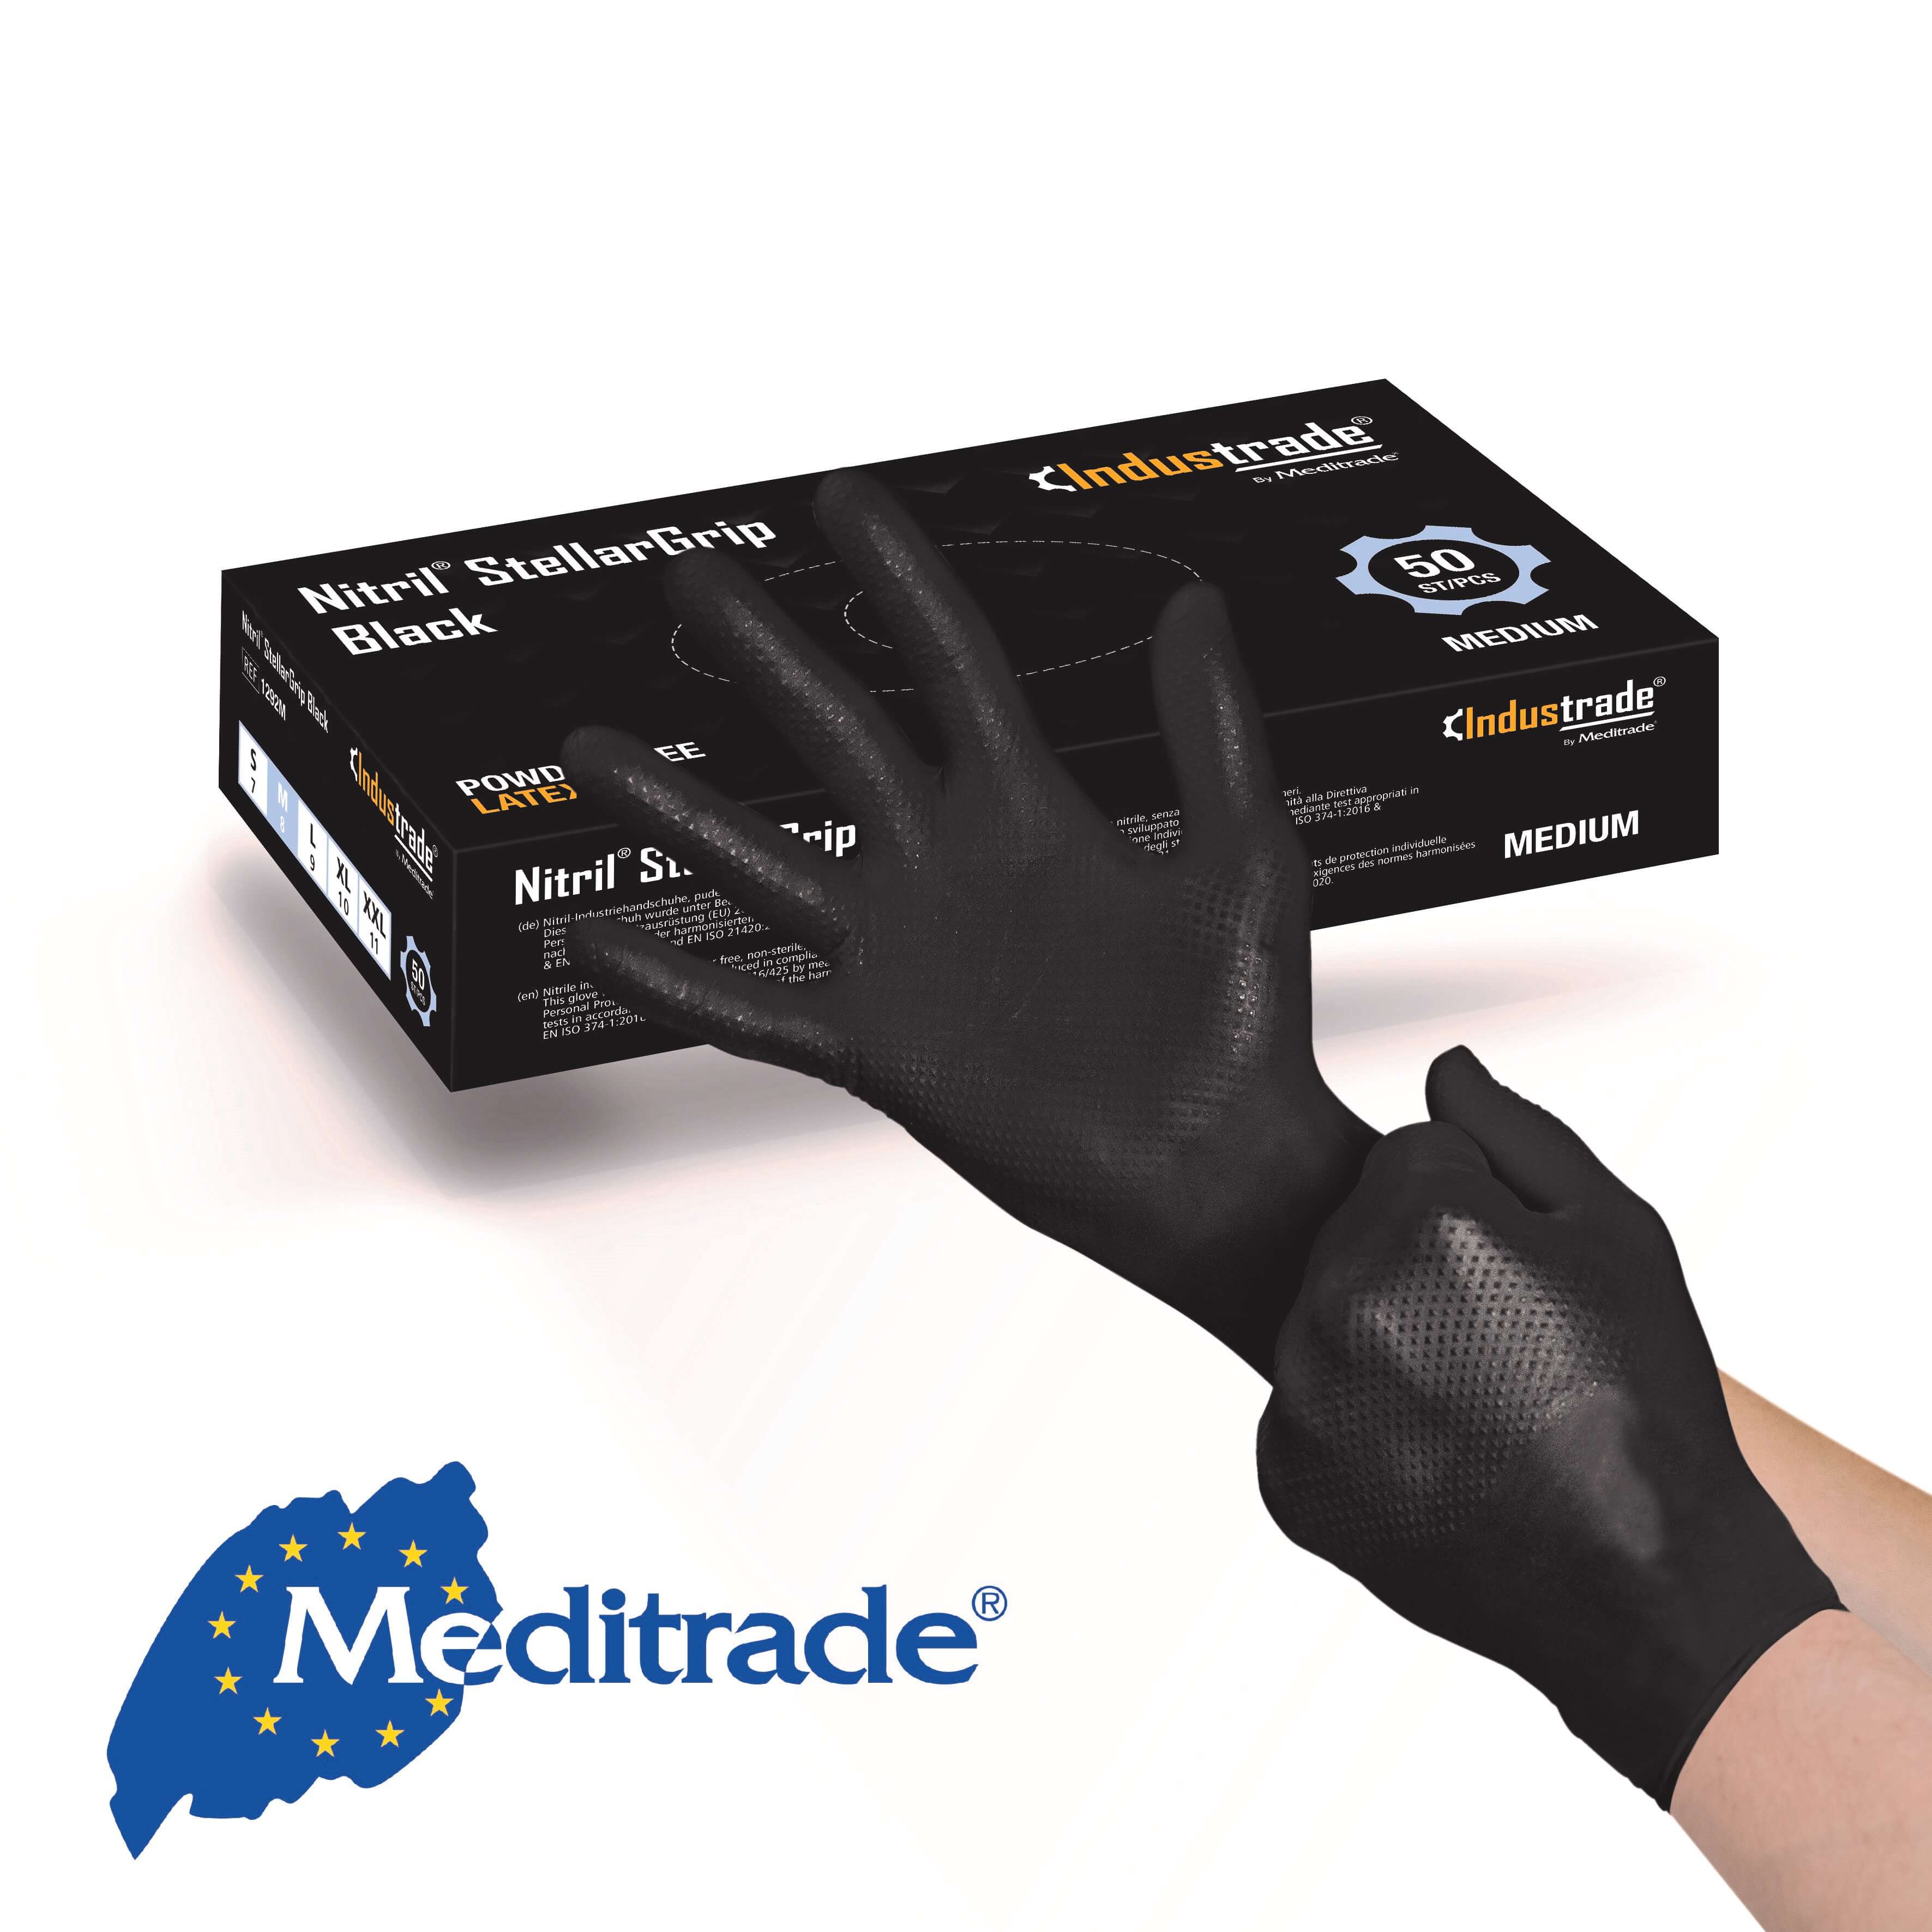 Meditrade Nitril® StellarGrip Black Schutzhandschuh Gr. L